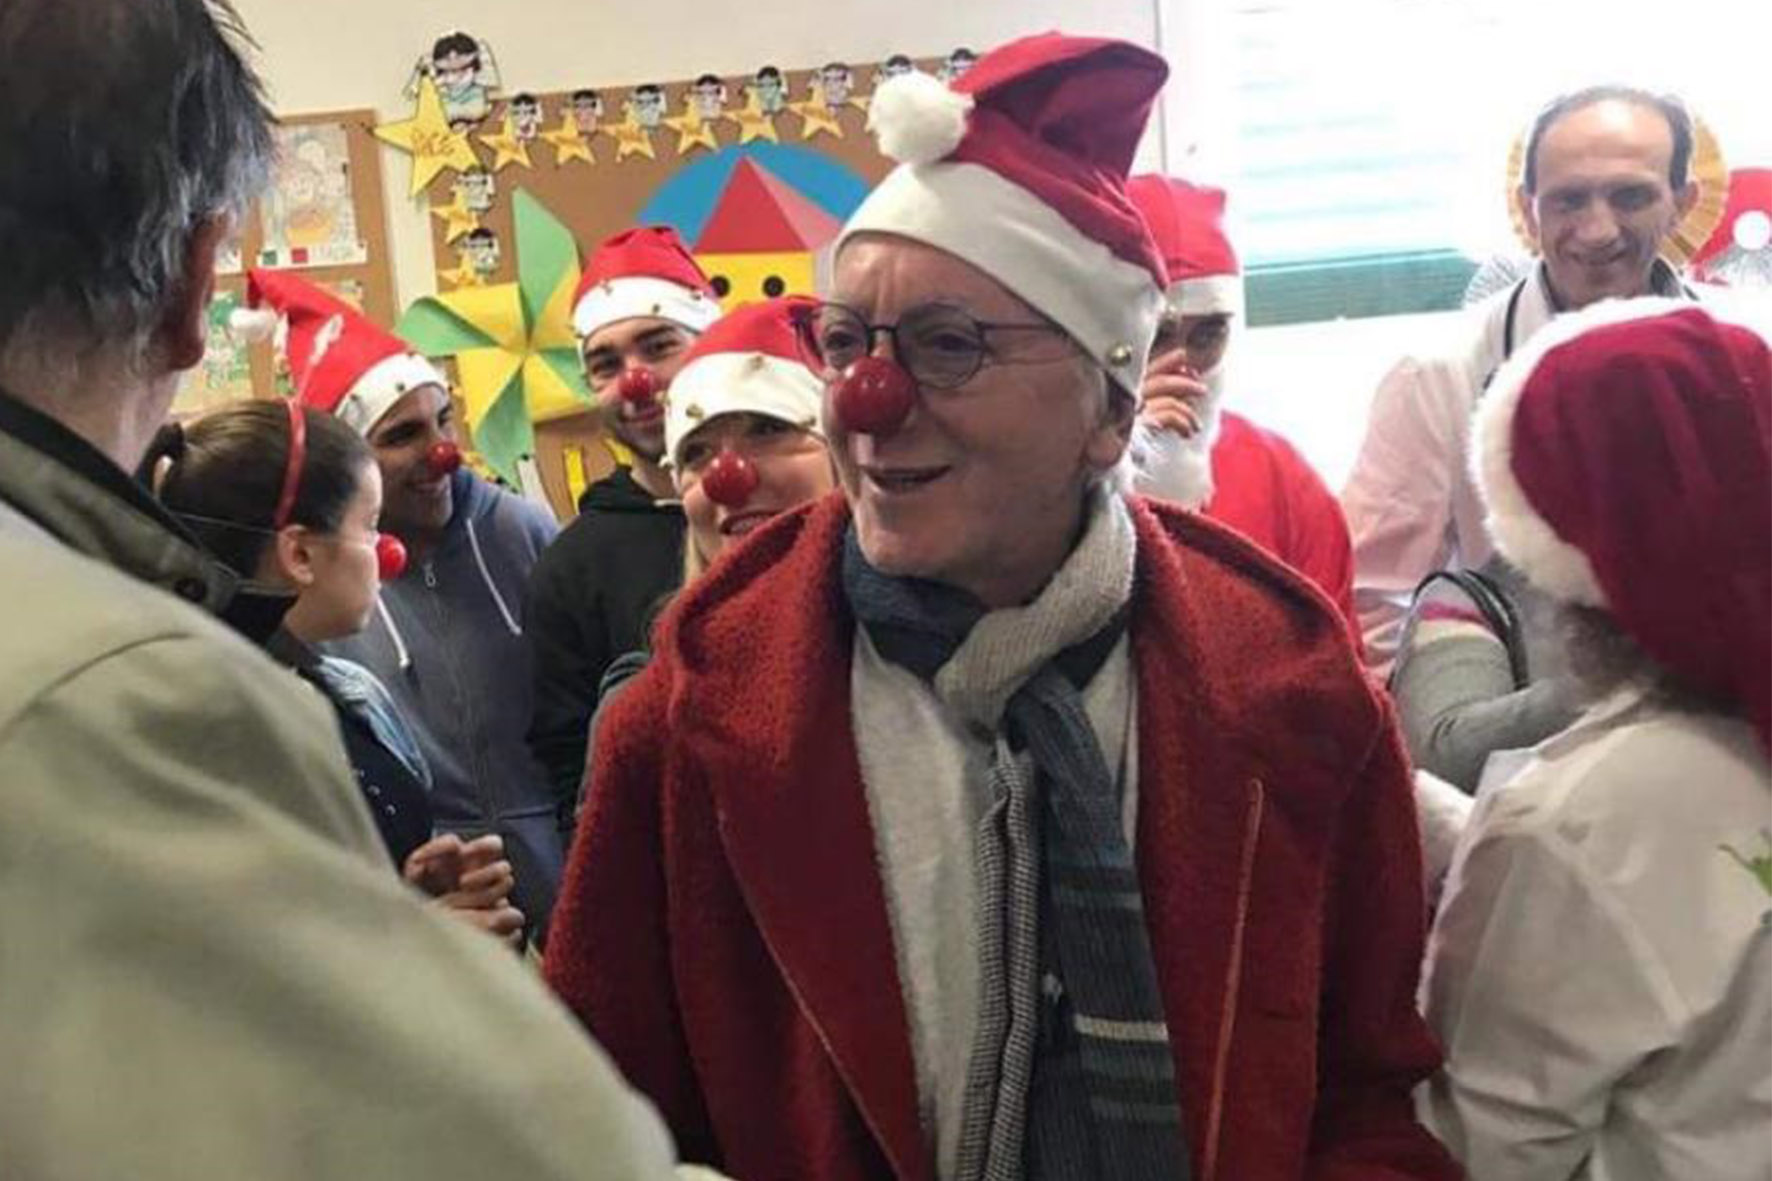 Babbi Natale in sella per portare doni alla pediatria del San Donato